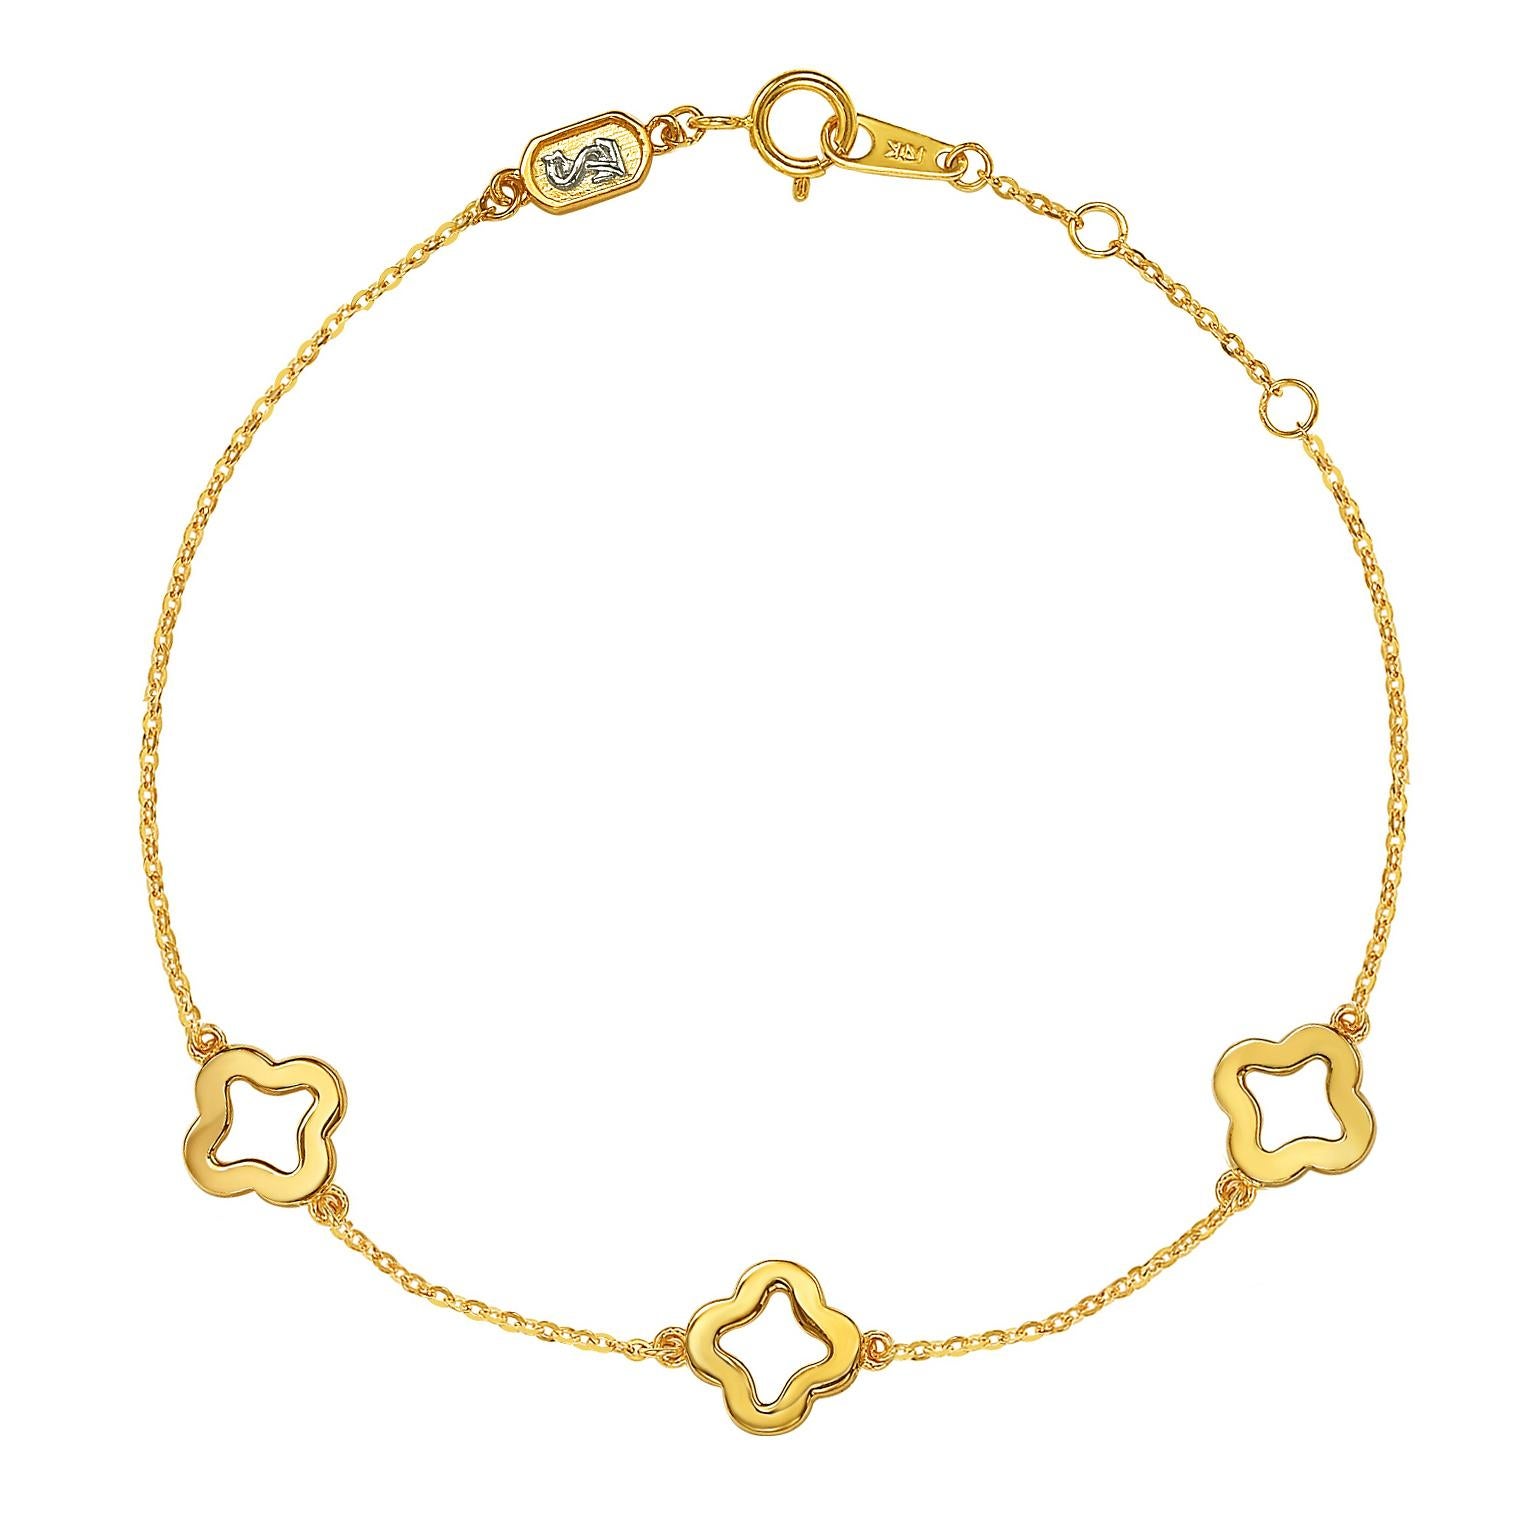 Cet élégant bracelet trèfle ouvert Suzy Levian by the yard comporte 54 diamants de 1 mm de diamètre, pour un total de 0,27 cttw, tous sertis dans une monture en or jaune 14 carats. Trois trèfles ouverts sont attachés à la chaîne et fixés à l'aide